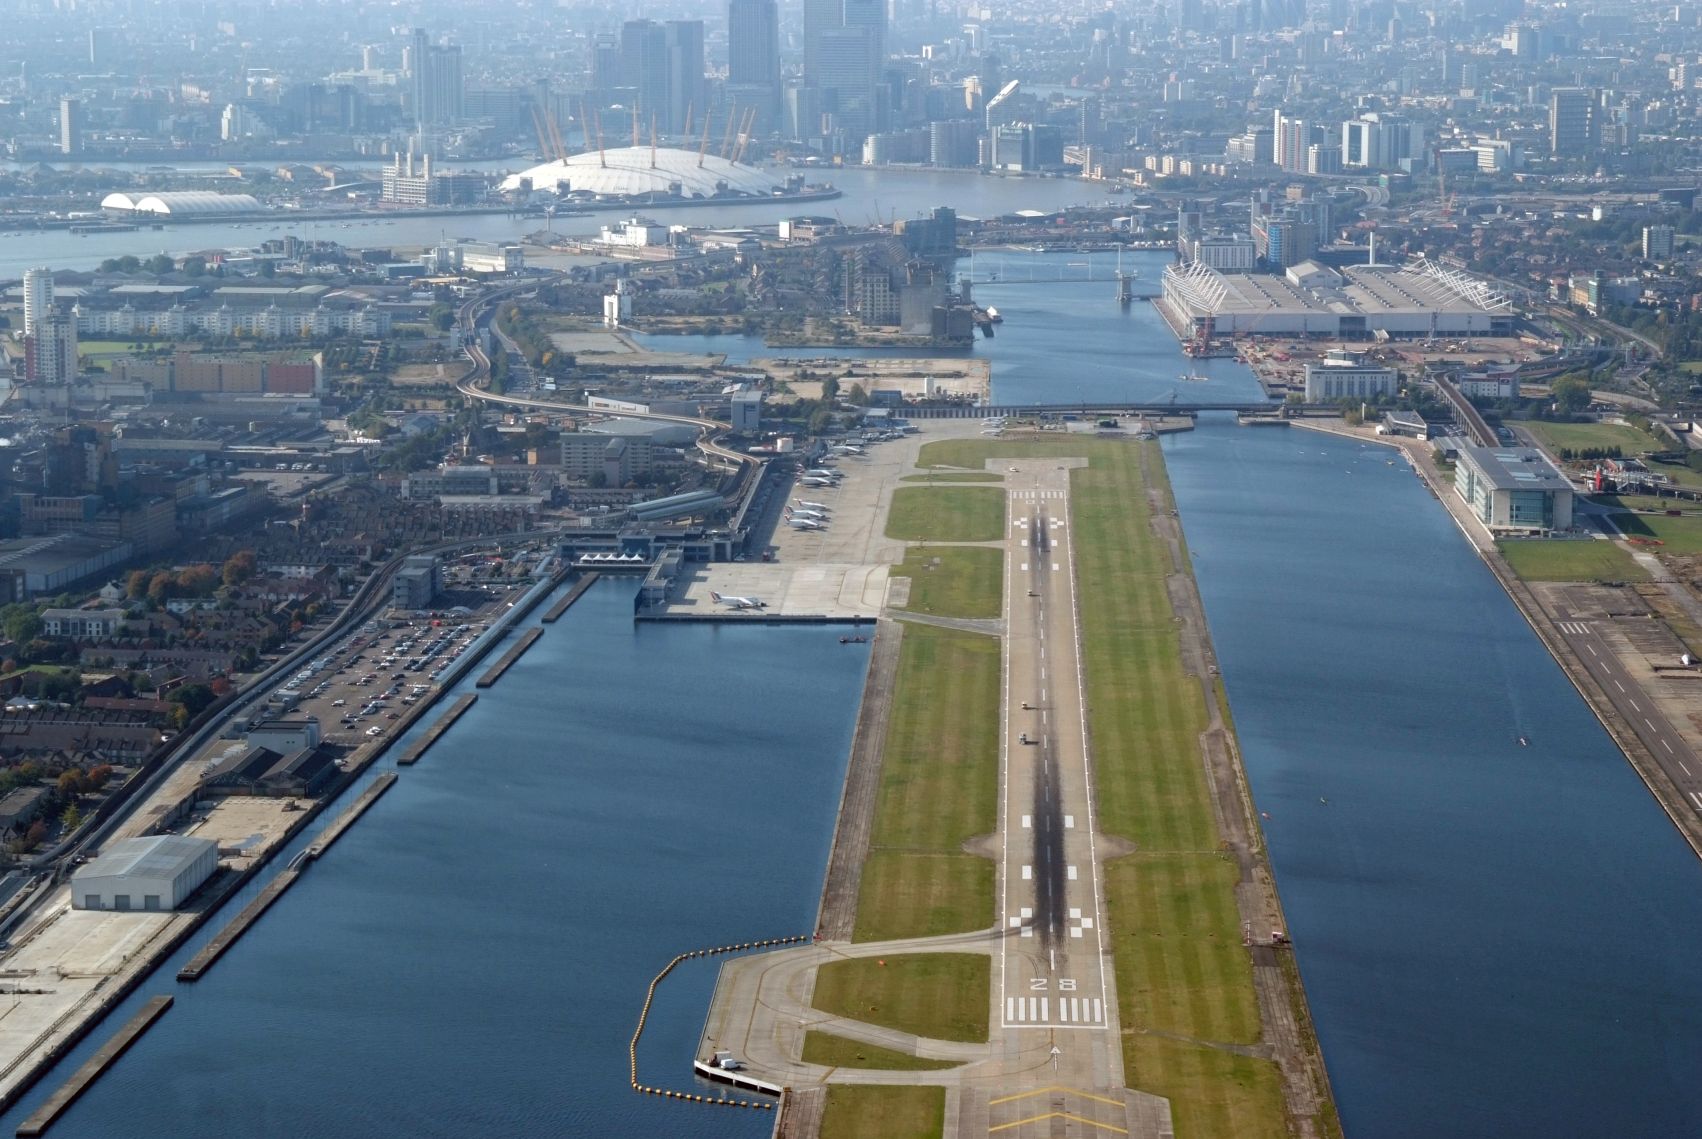 London City kelet felől: ebbe az irányba lehet bővíteni a forgalmi előteret és a terminált